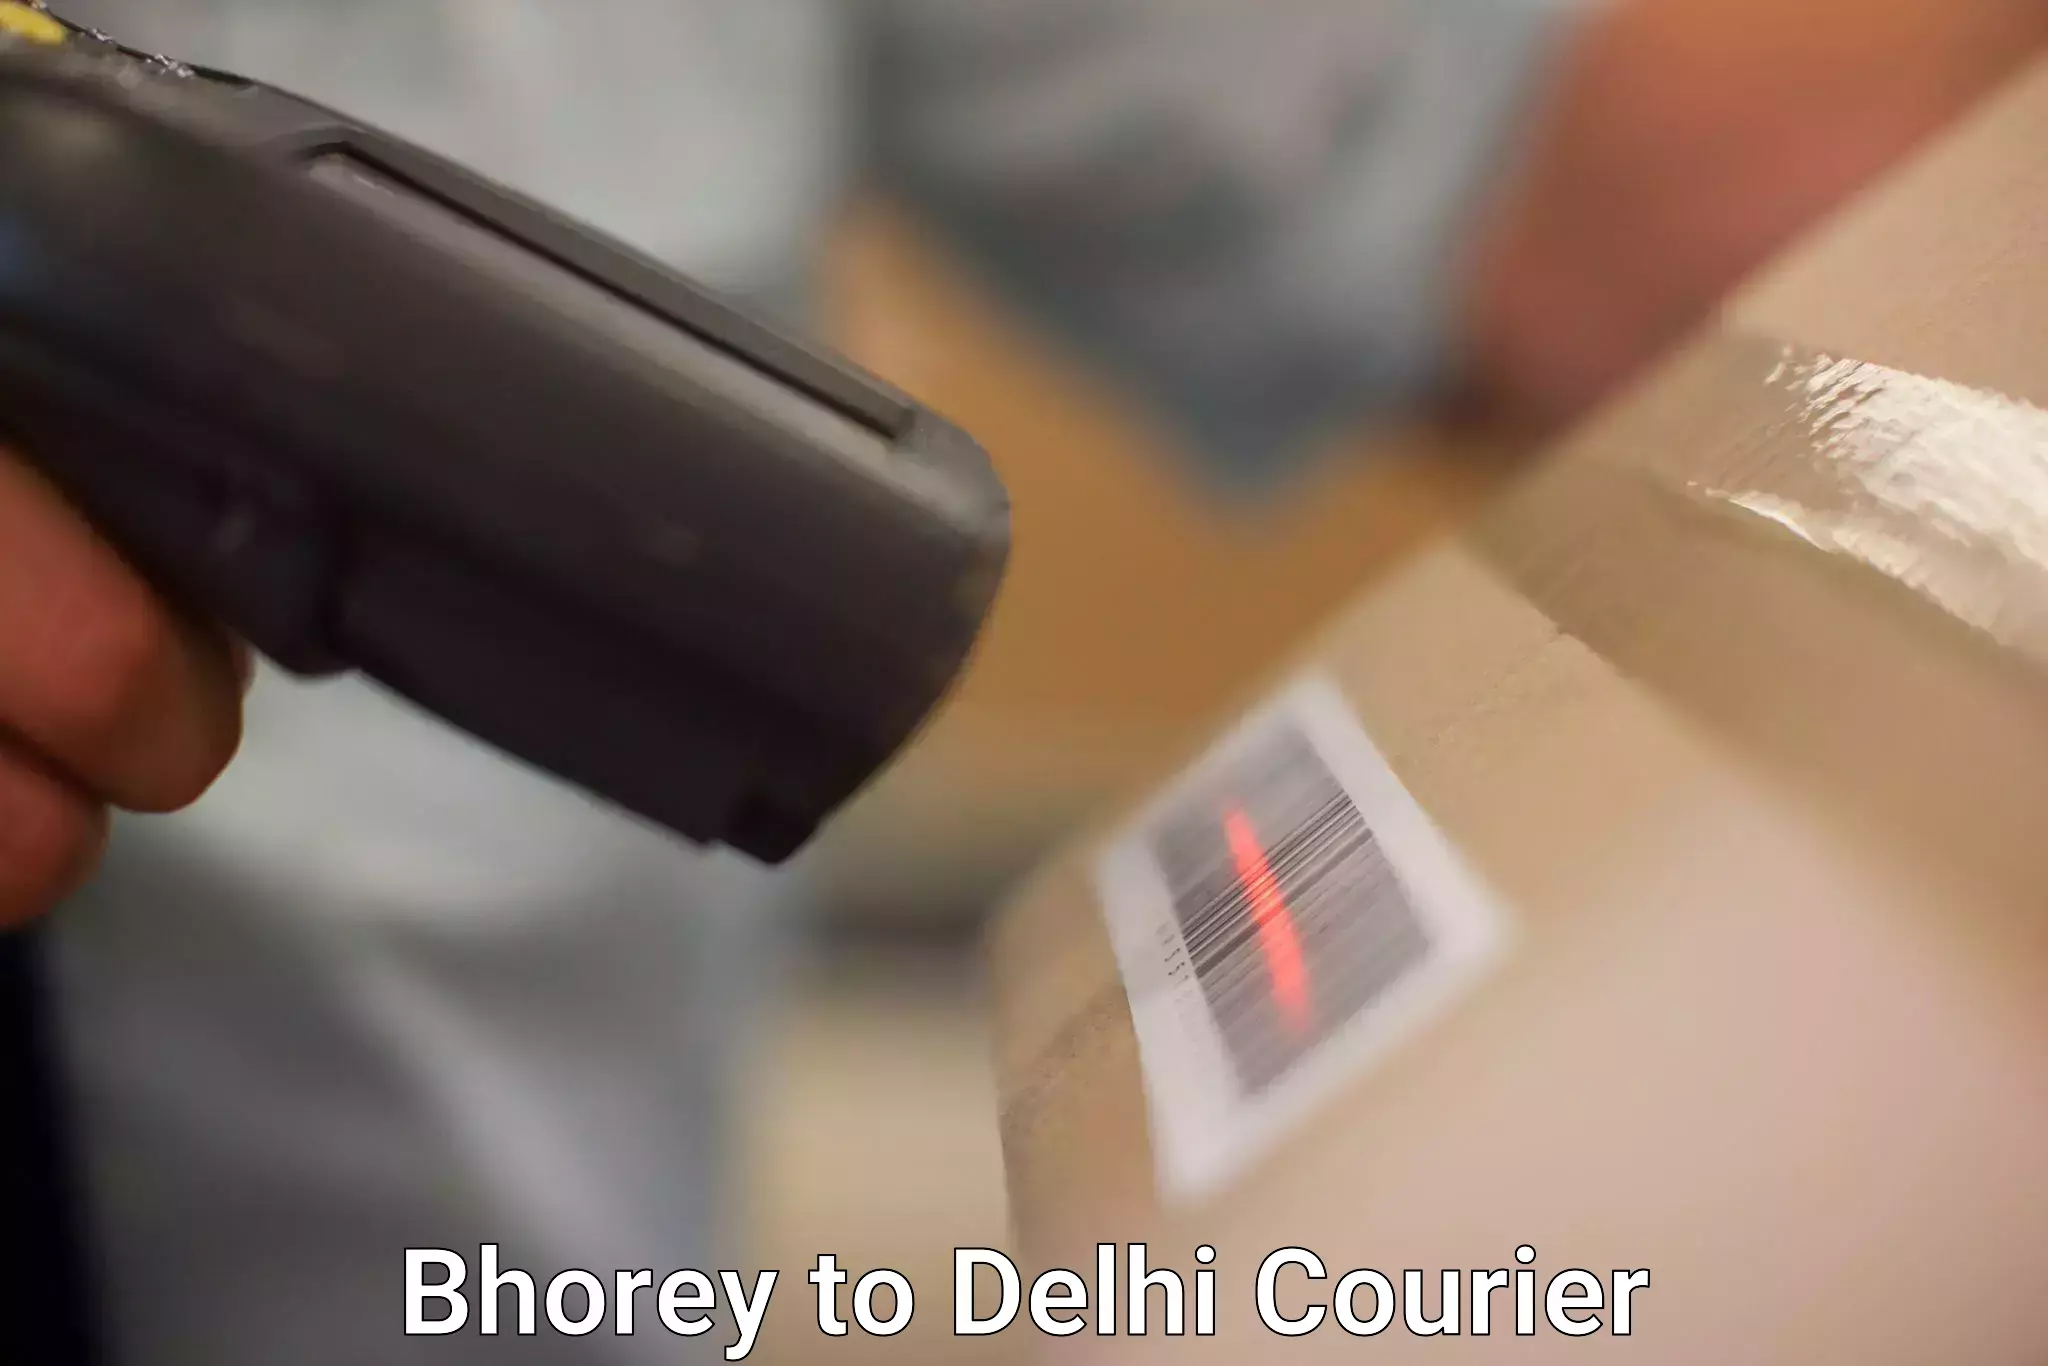 Efficient order fulfillment Bhorey to Delhi